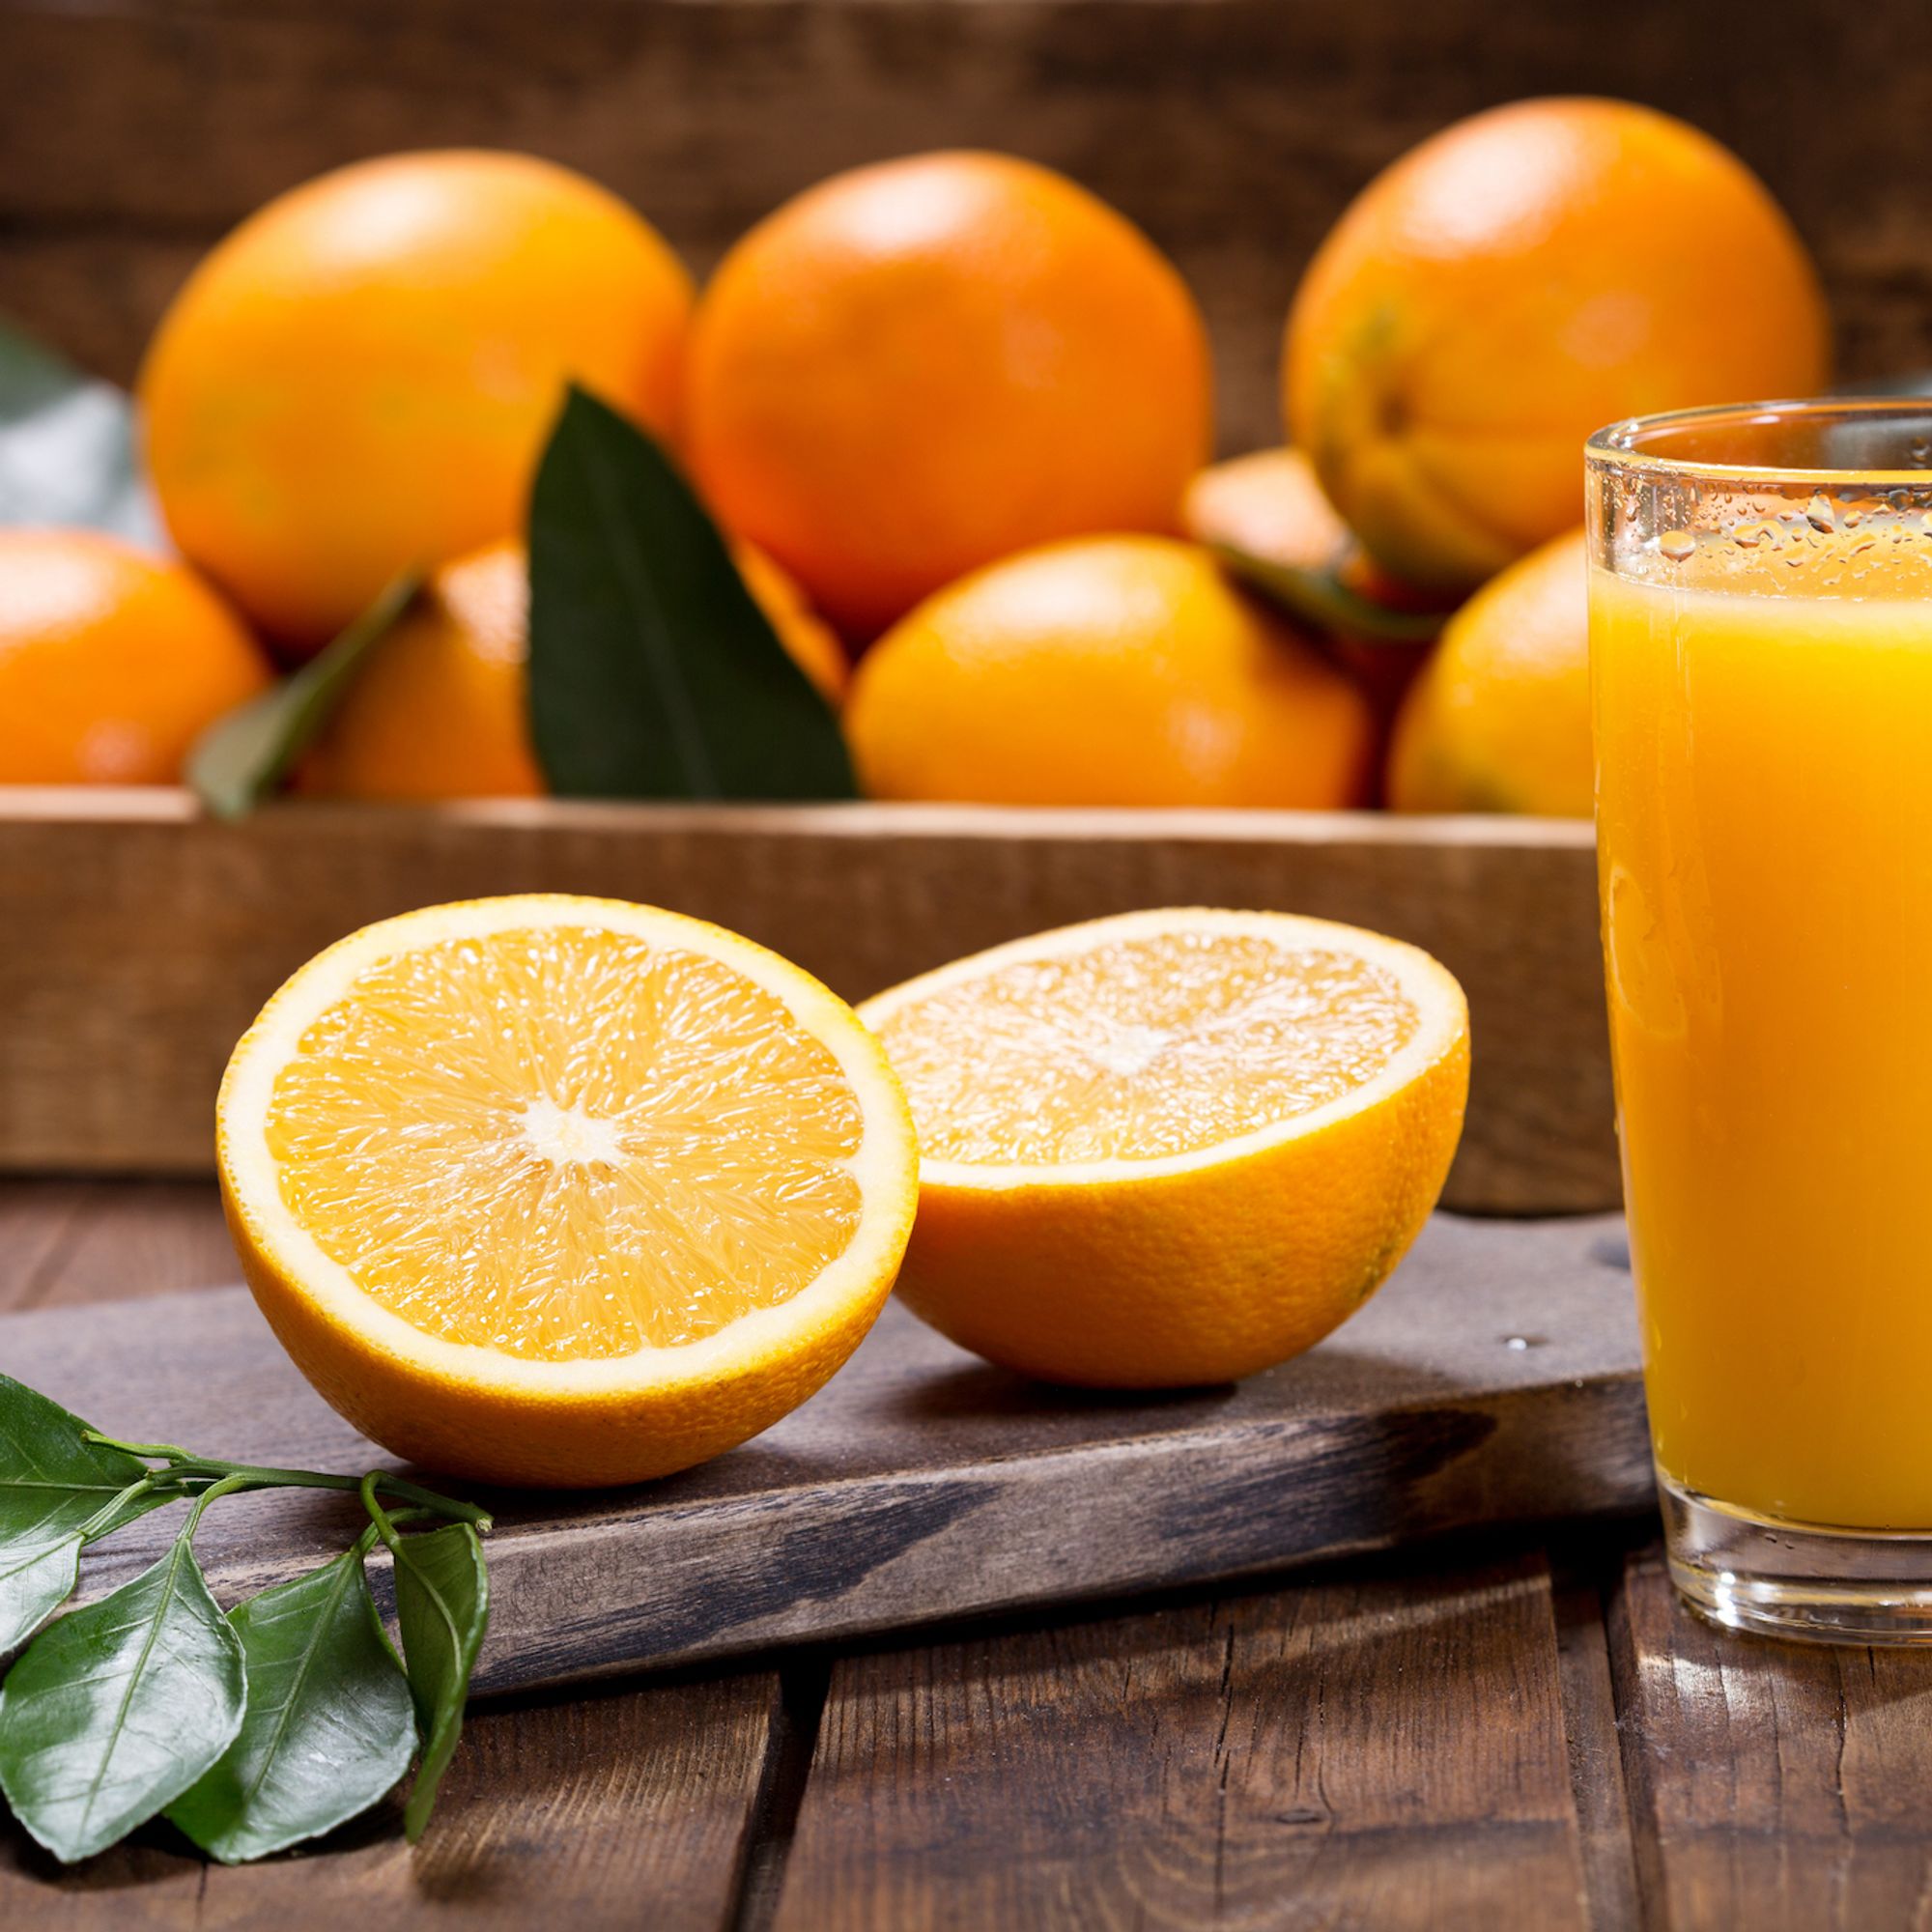 Toutes nos recettes vitaminées à base de jus d'orange frais